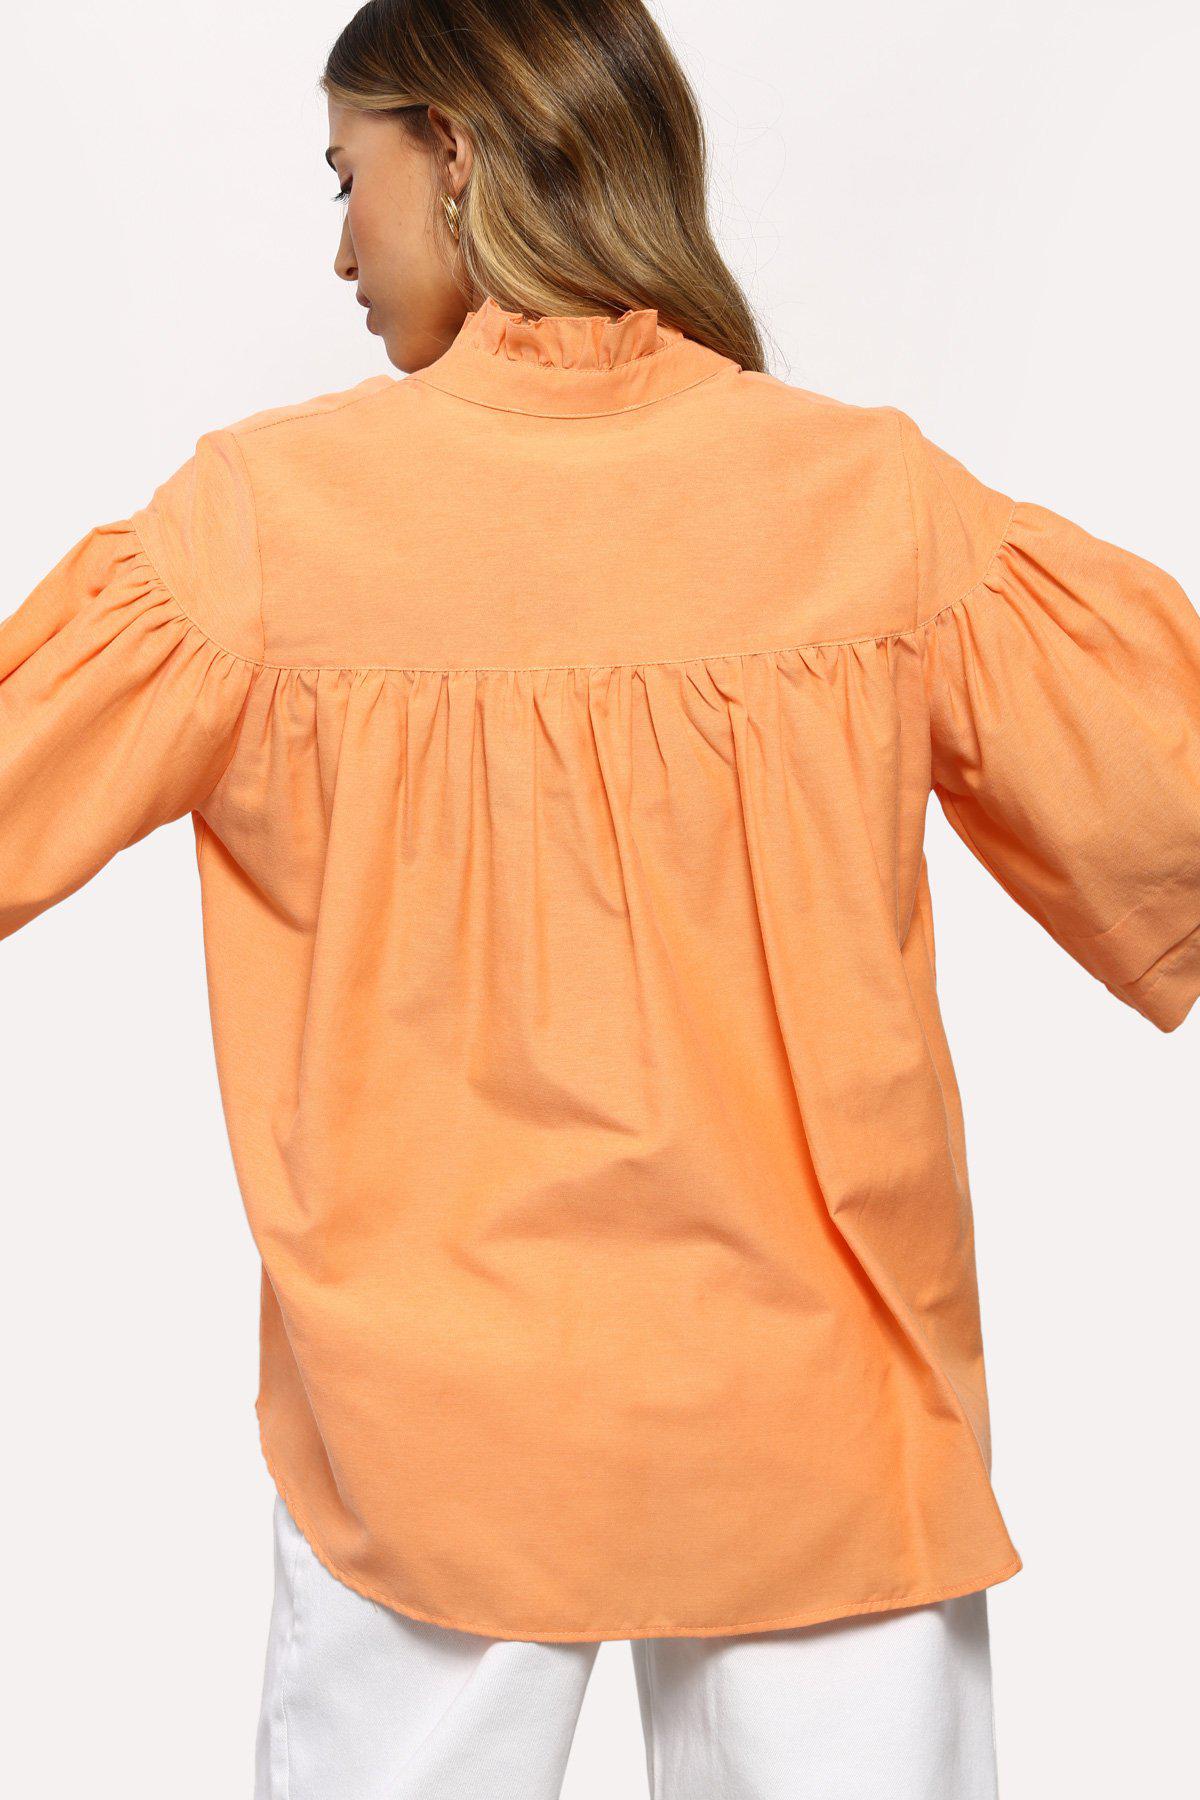 חולצת דומיניק בצבע סגול - Dana Sidi